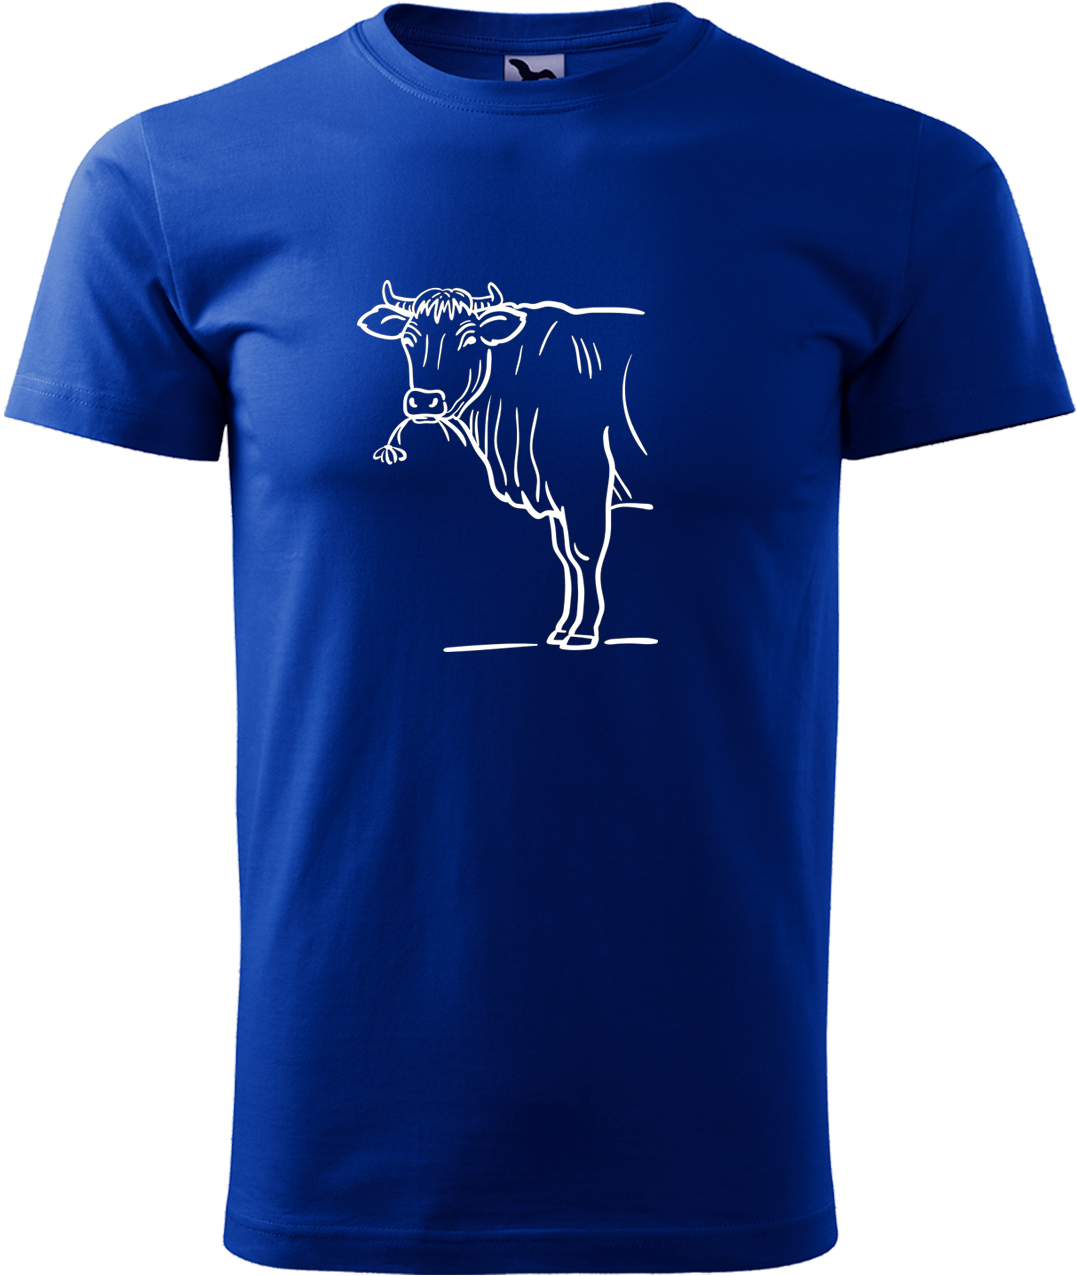 Pánské tričko s krávou - Býk Velikost: S, Barva: Královská modrá (05), Střih: pánský